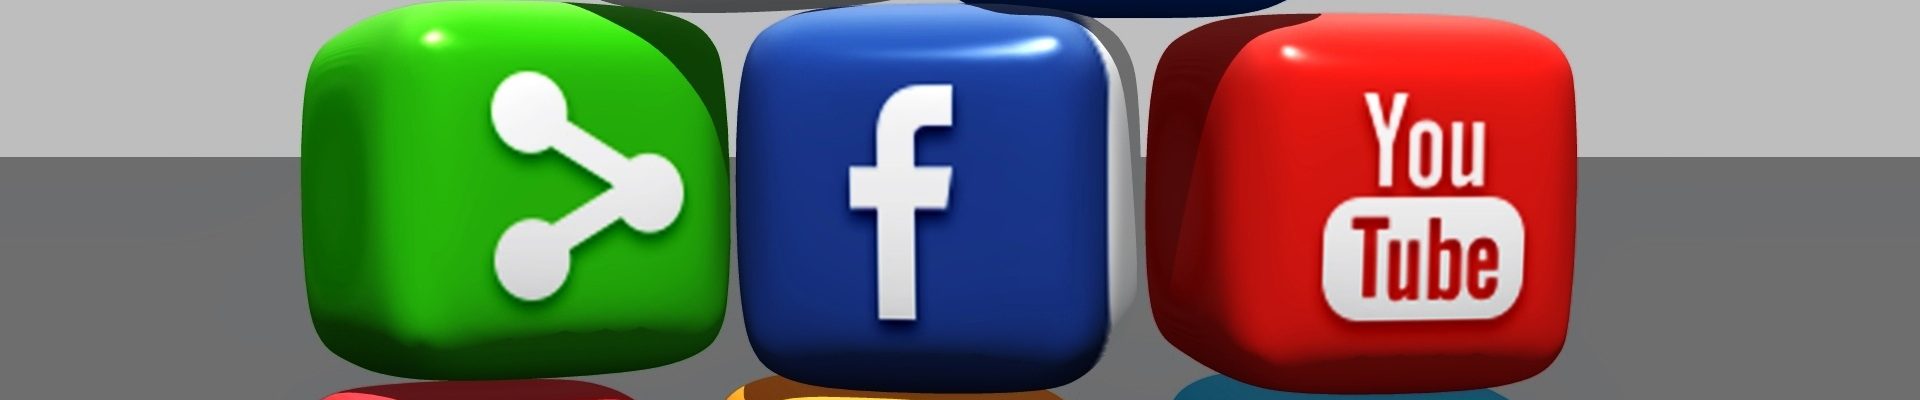 Geldverdienen mit Facebook, Instagram, YouTube und Co.  - social media 488886 - Themen-Radio